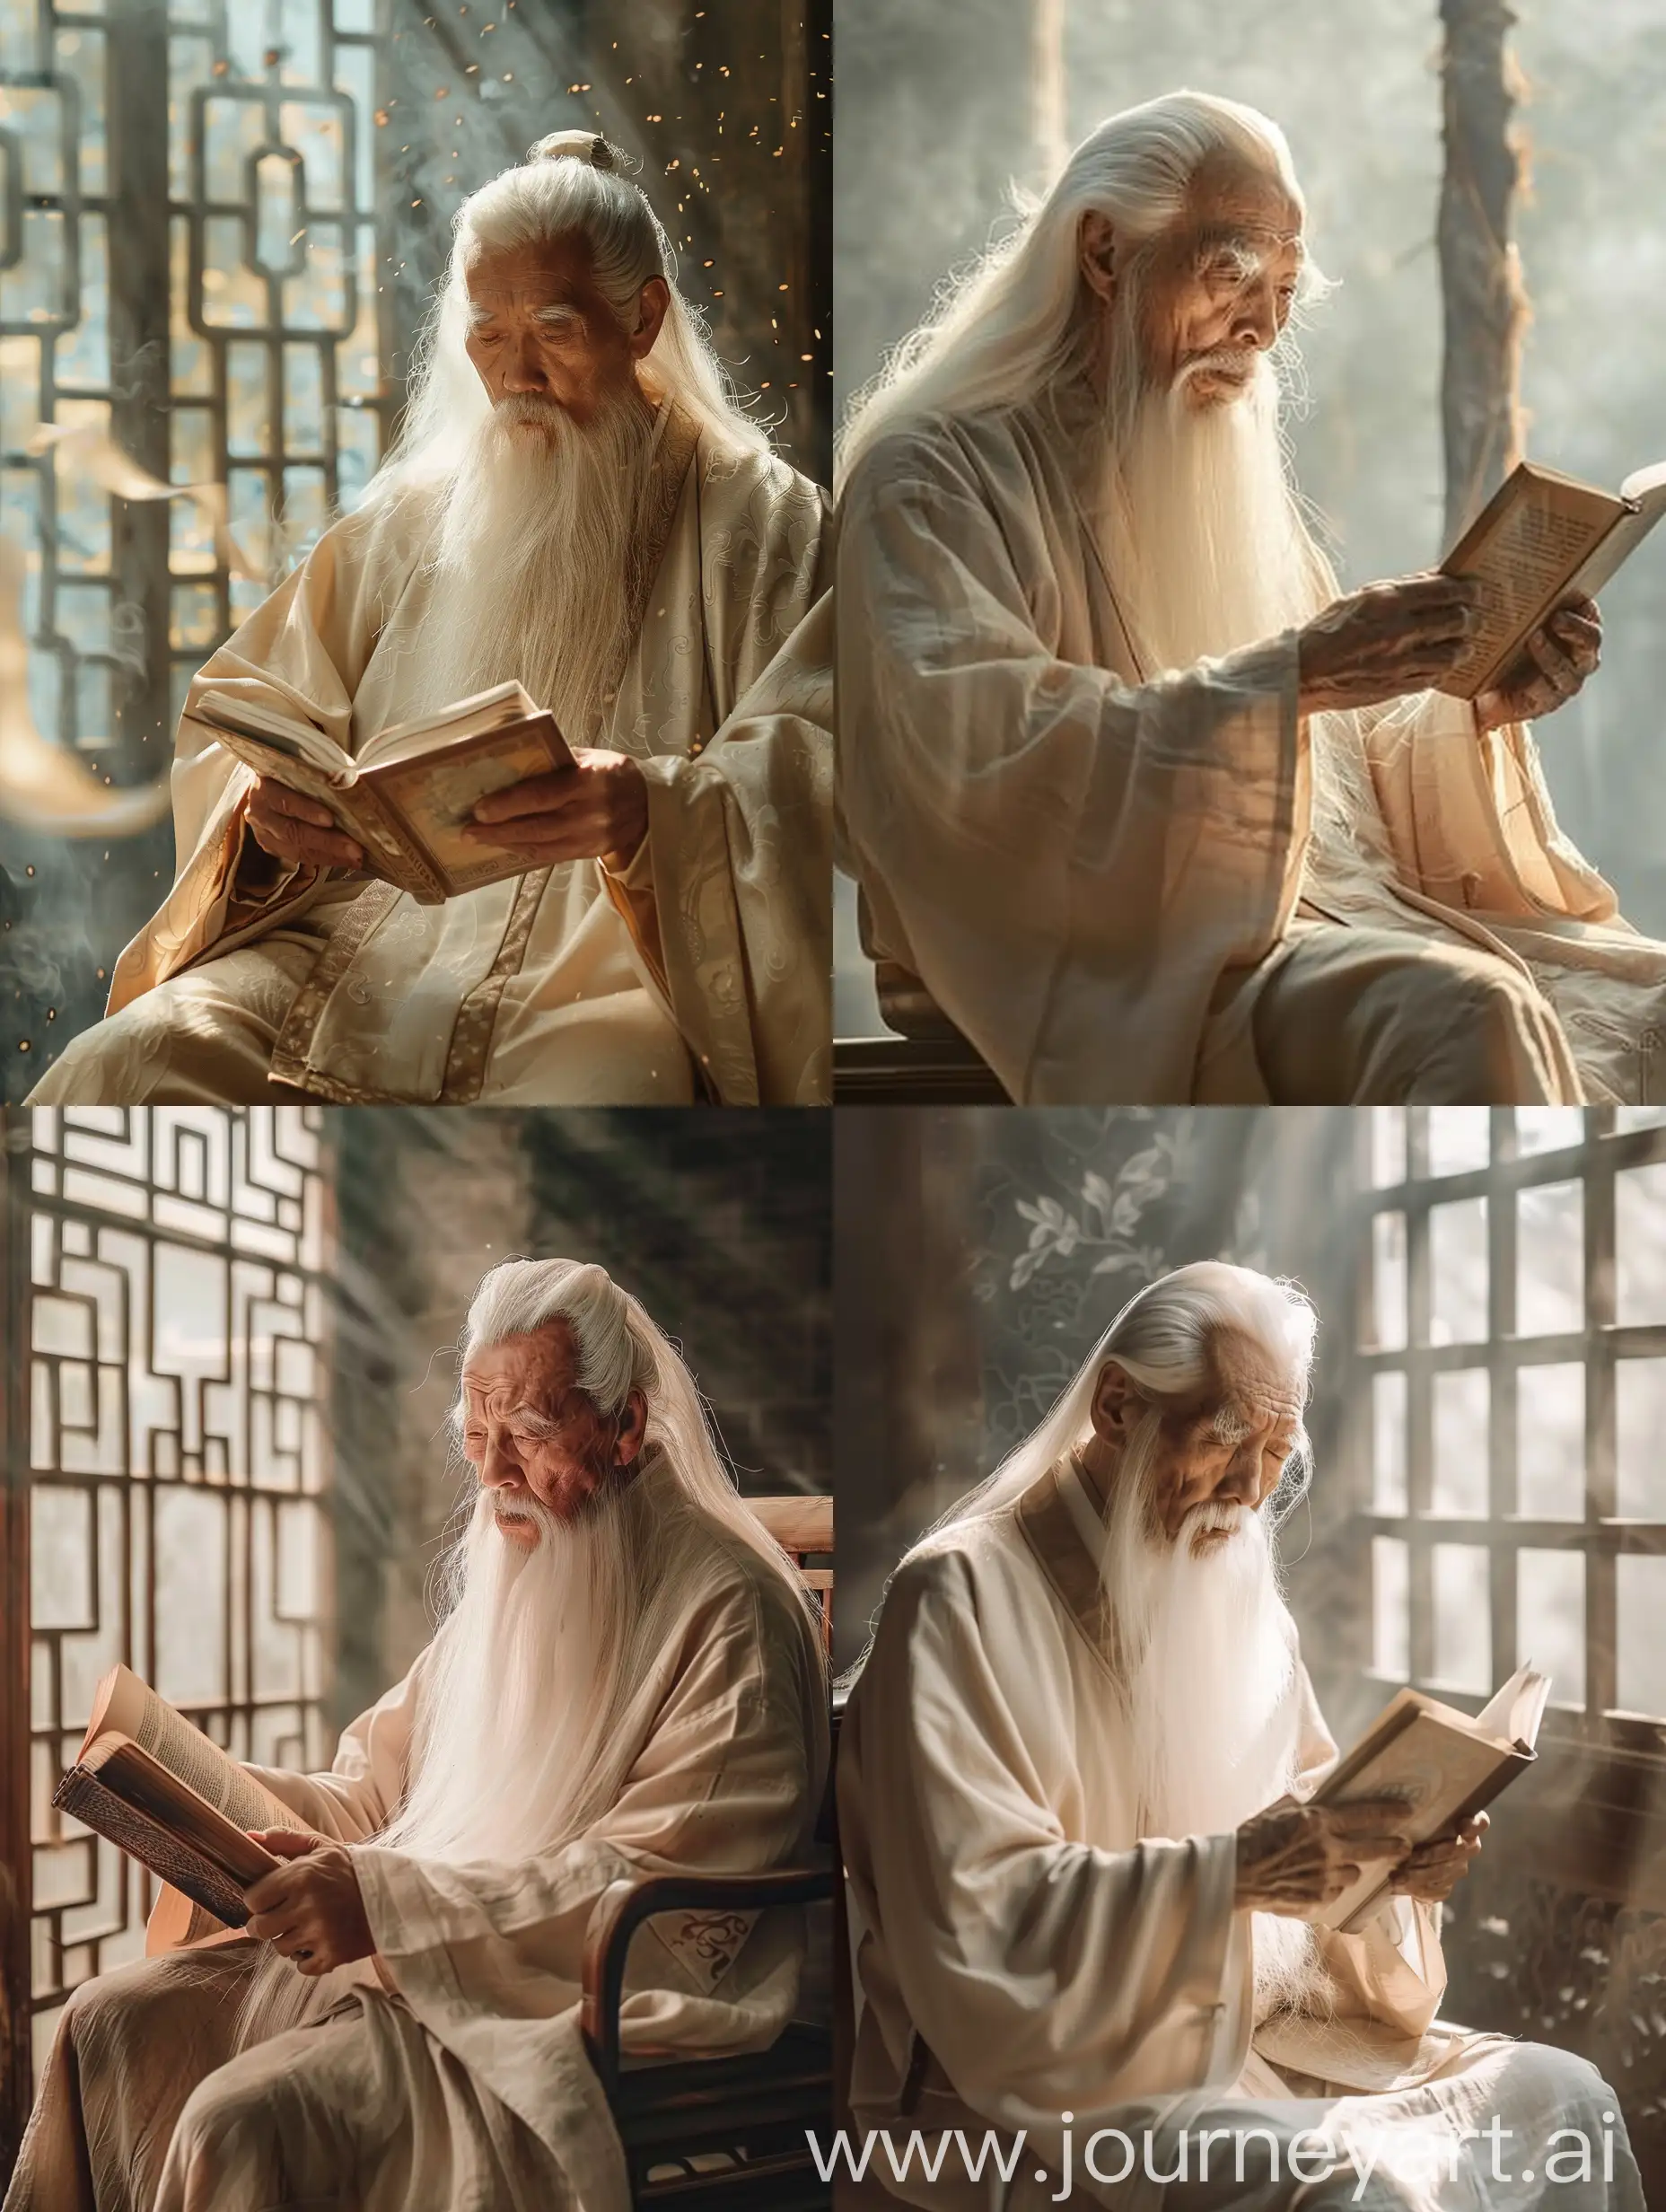 在这个电影般的场景中，一个留着长长白胡子的中国老人坐在一把古朴的椅子上，手捧着一本书专注地阅读。他的脸上洋溢着岁月的痕迹，透露出智慧和沉静。老人身穿传统的中国服饰，呈现出受中国古代艺术影响的风格。他的手指轻轻翻动着书页，仿佛在触摸着历史的印记。他穿着中国传统服装，采用深米色和浅琥珀色，展现出中国古代人的独特韵味。整个场景弥漫着一种深沉而神秘的氛围，仿佛将人们带入了一个古老的文化殿堂。光线透过窗户洒在老人身上，营造出一种梦幻般的效果。这个电影般的场景将中国古代艺术的影响融入其中，展现出文化的底蕴和深度。老人的阅读姿态和周围的环境相得益彰，仿佛在诉说着一个古老而美丽的故事。